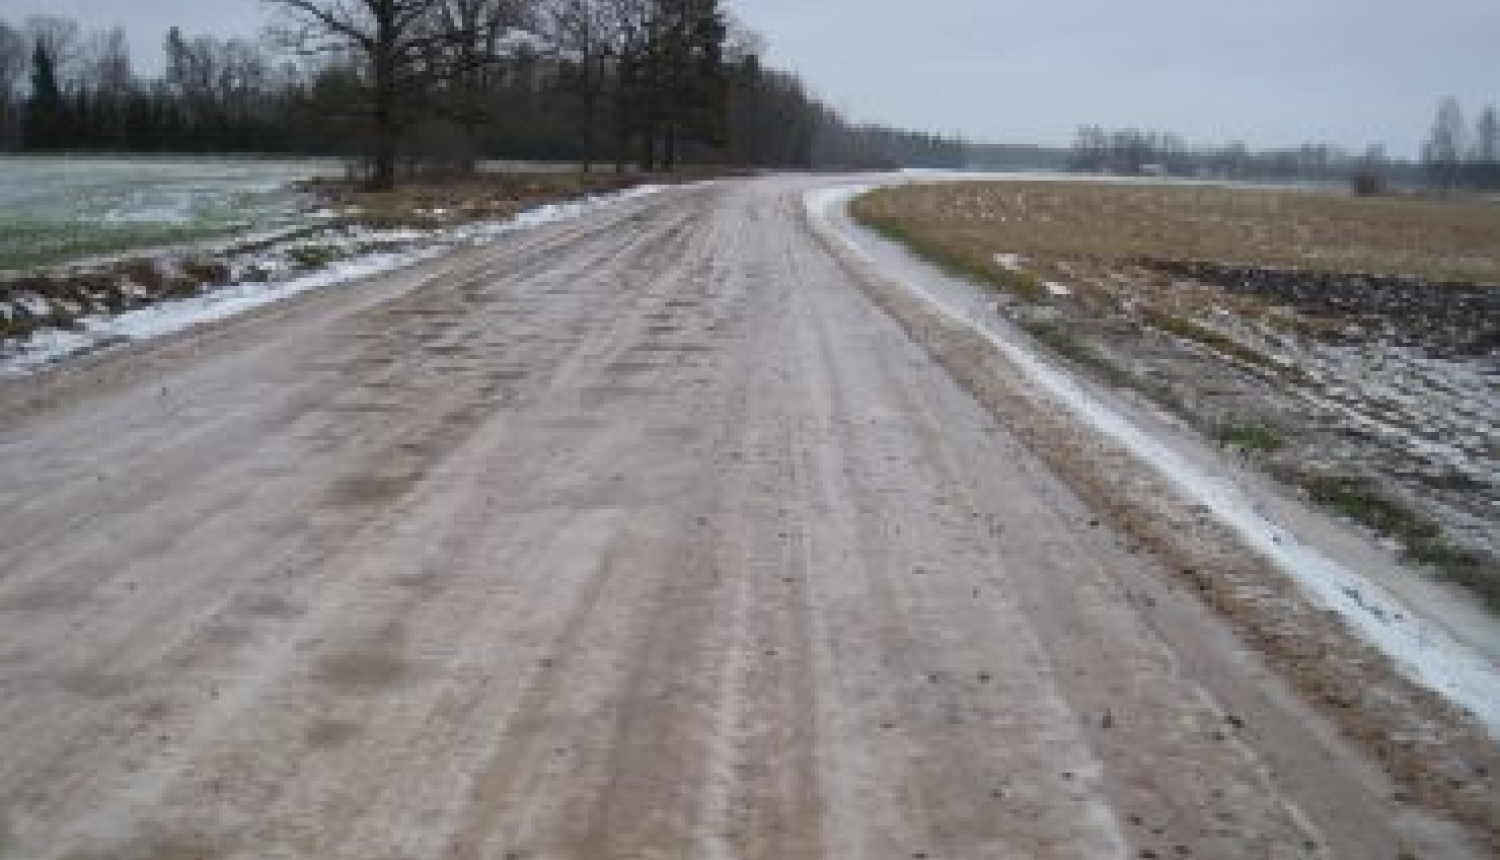 Latvijas Valsts ceļi: Masas ierobežojumi ieviesti jau uz 76 grants ceļu posmiem